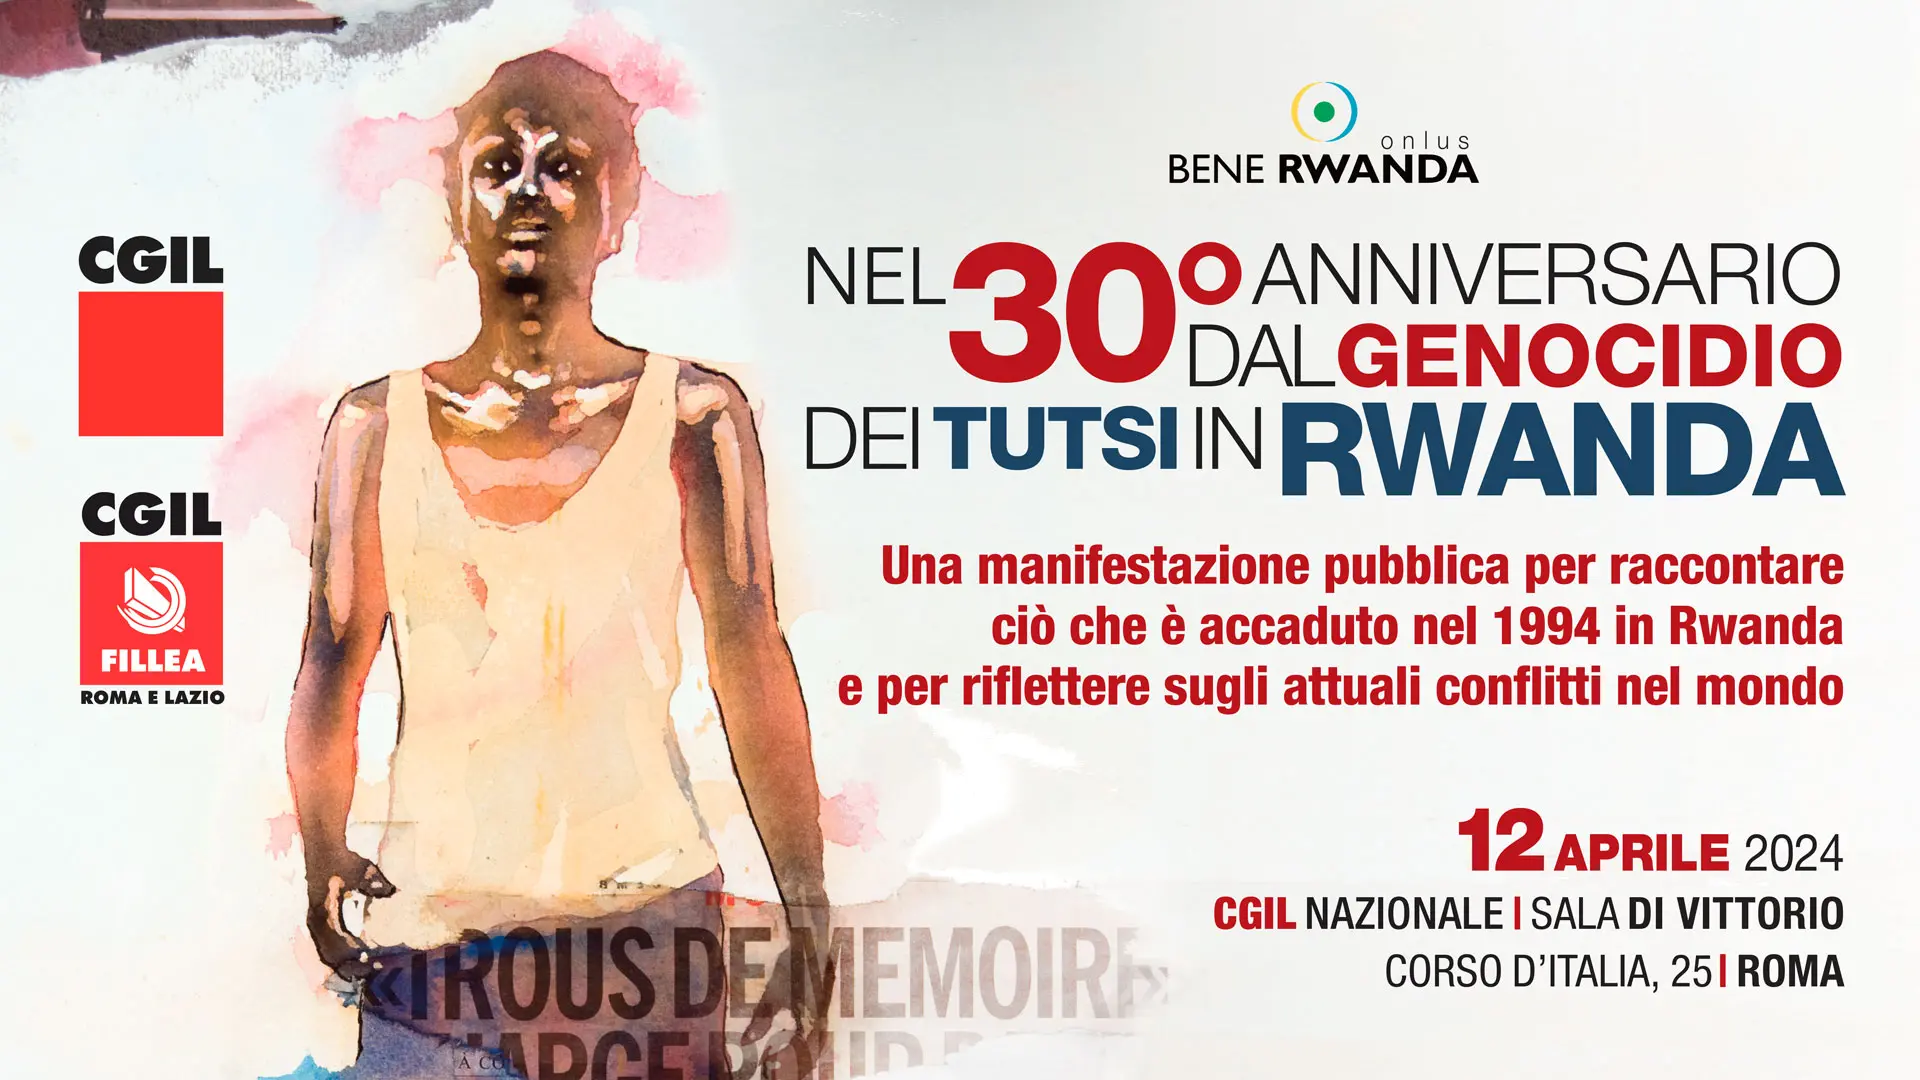 Nel 30° anniversario dal genocidio dei Tutsi in Rwanda